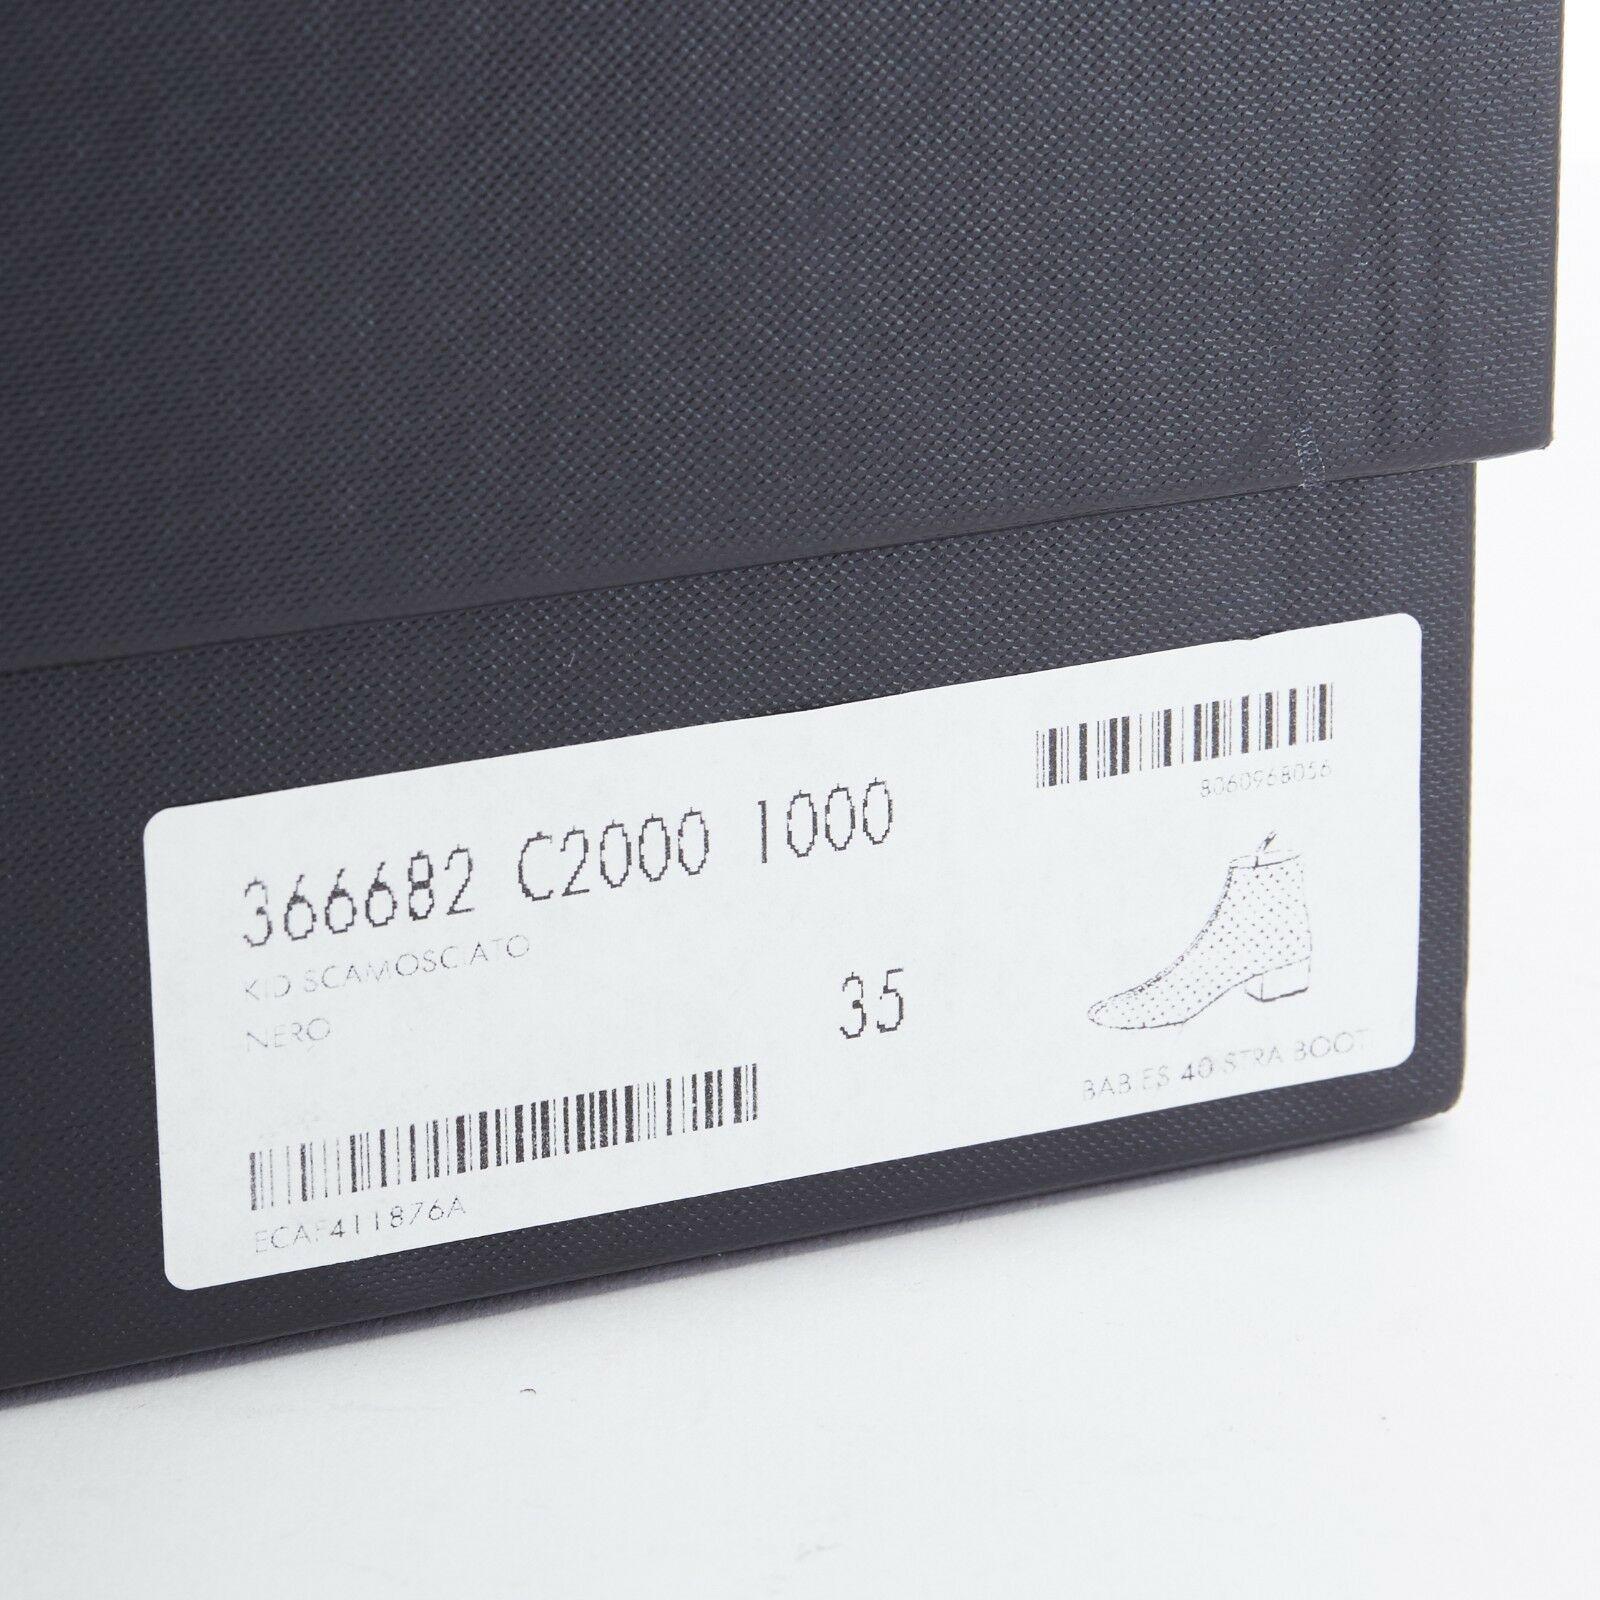 SAINT LAURENT PARIS black suede strass crystal embellished ankle boot shoe EU35 For Sale 8